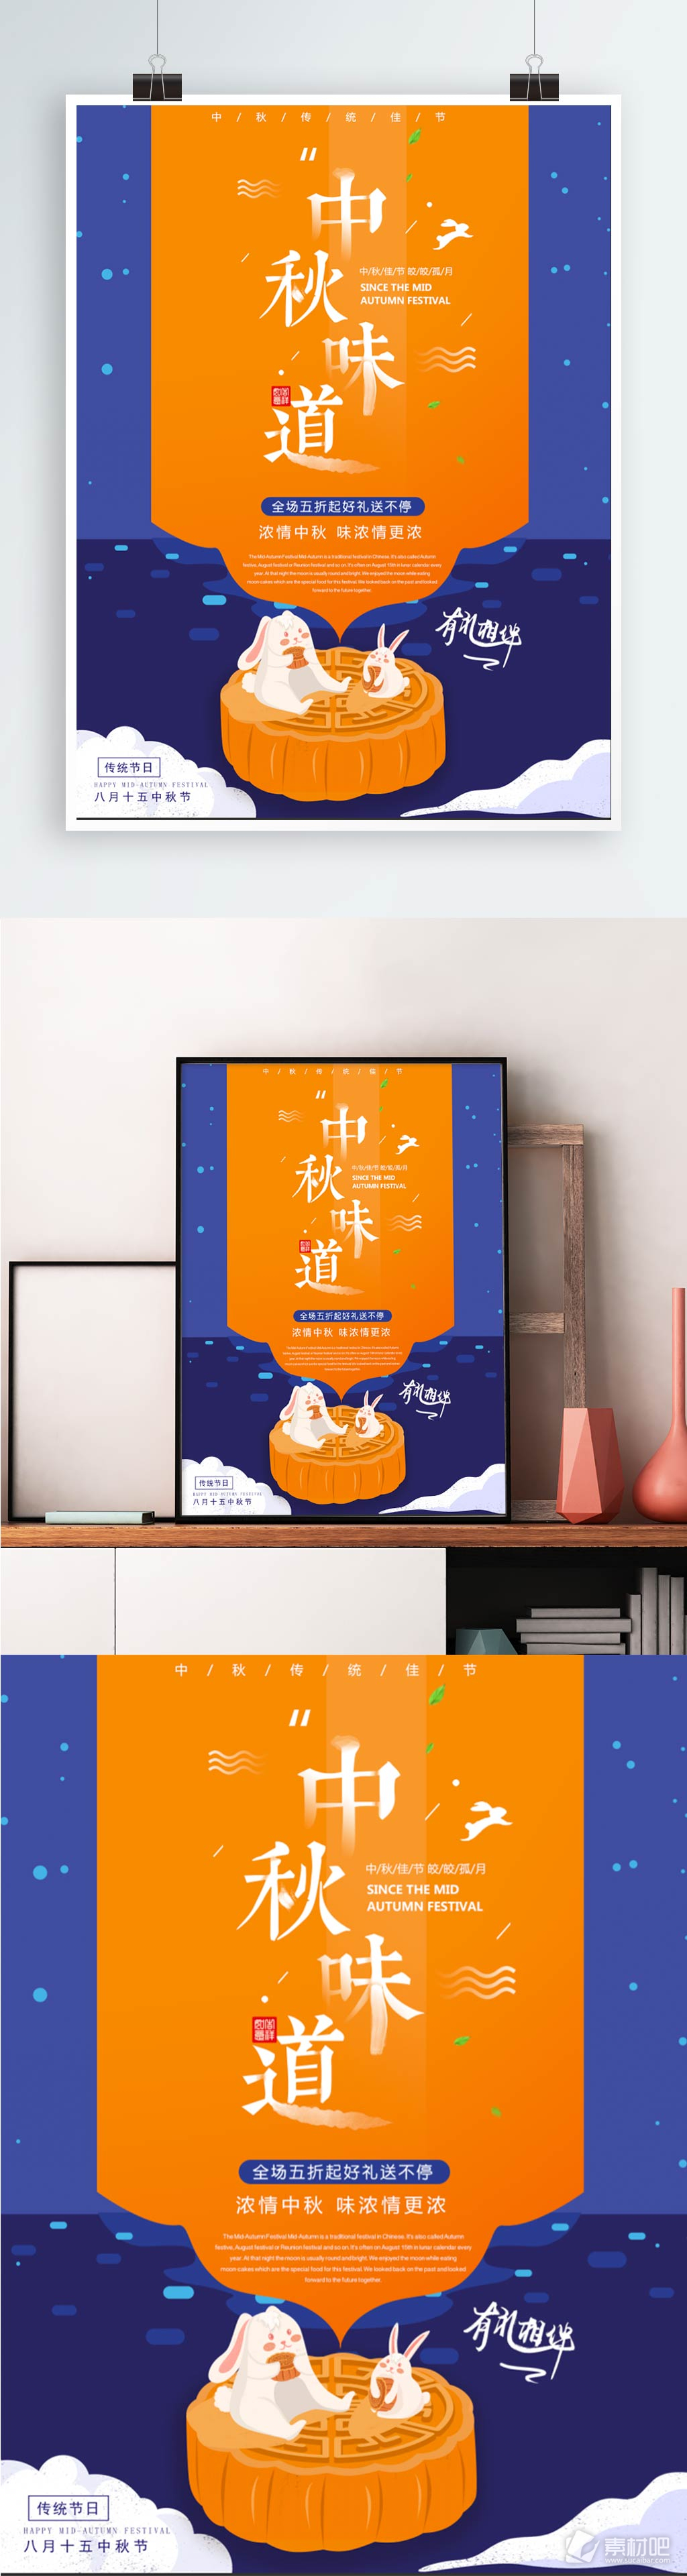 简约对比色主题创意中秋节日宣传海报